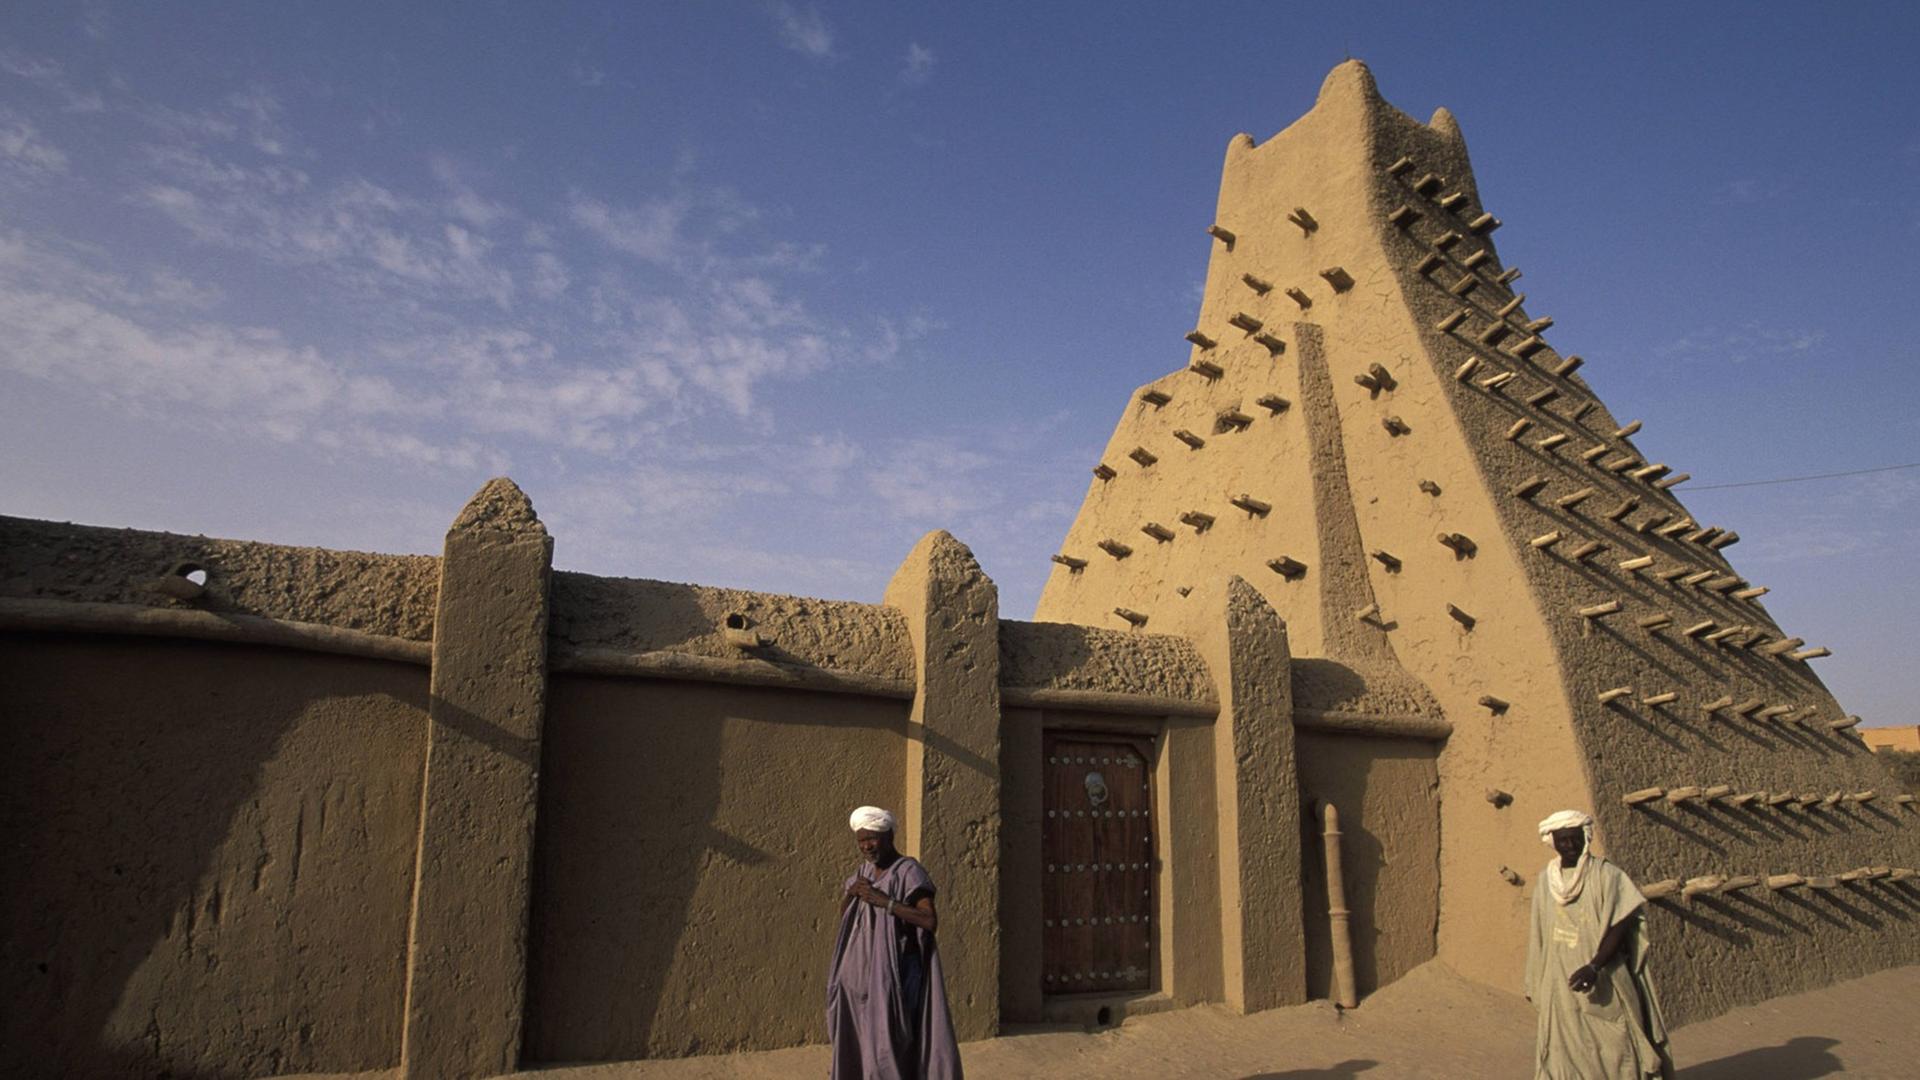 Die Sankore-Moschee aus dem 15. Jahrhundert war der Grundstein fuer die Universitaet von Sankore, Mali, Timbuktu